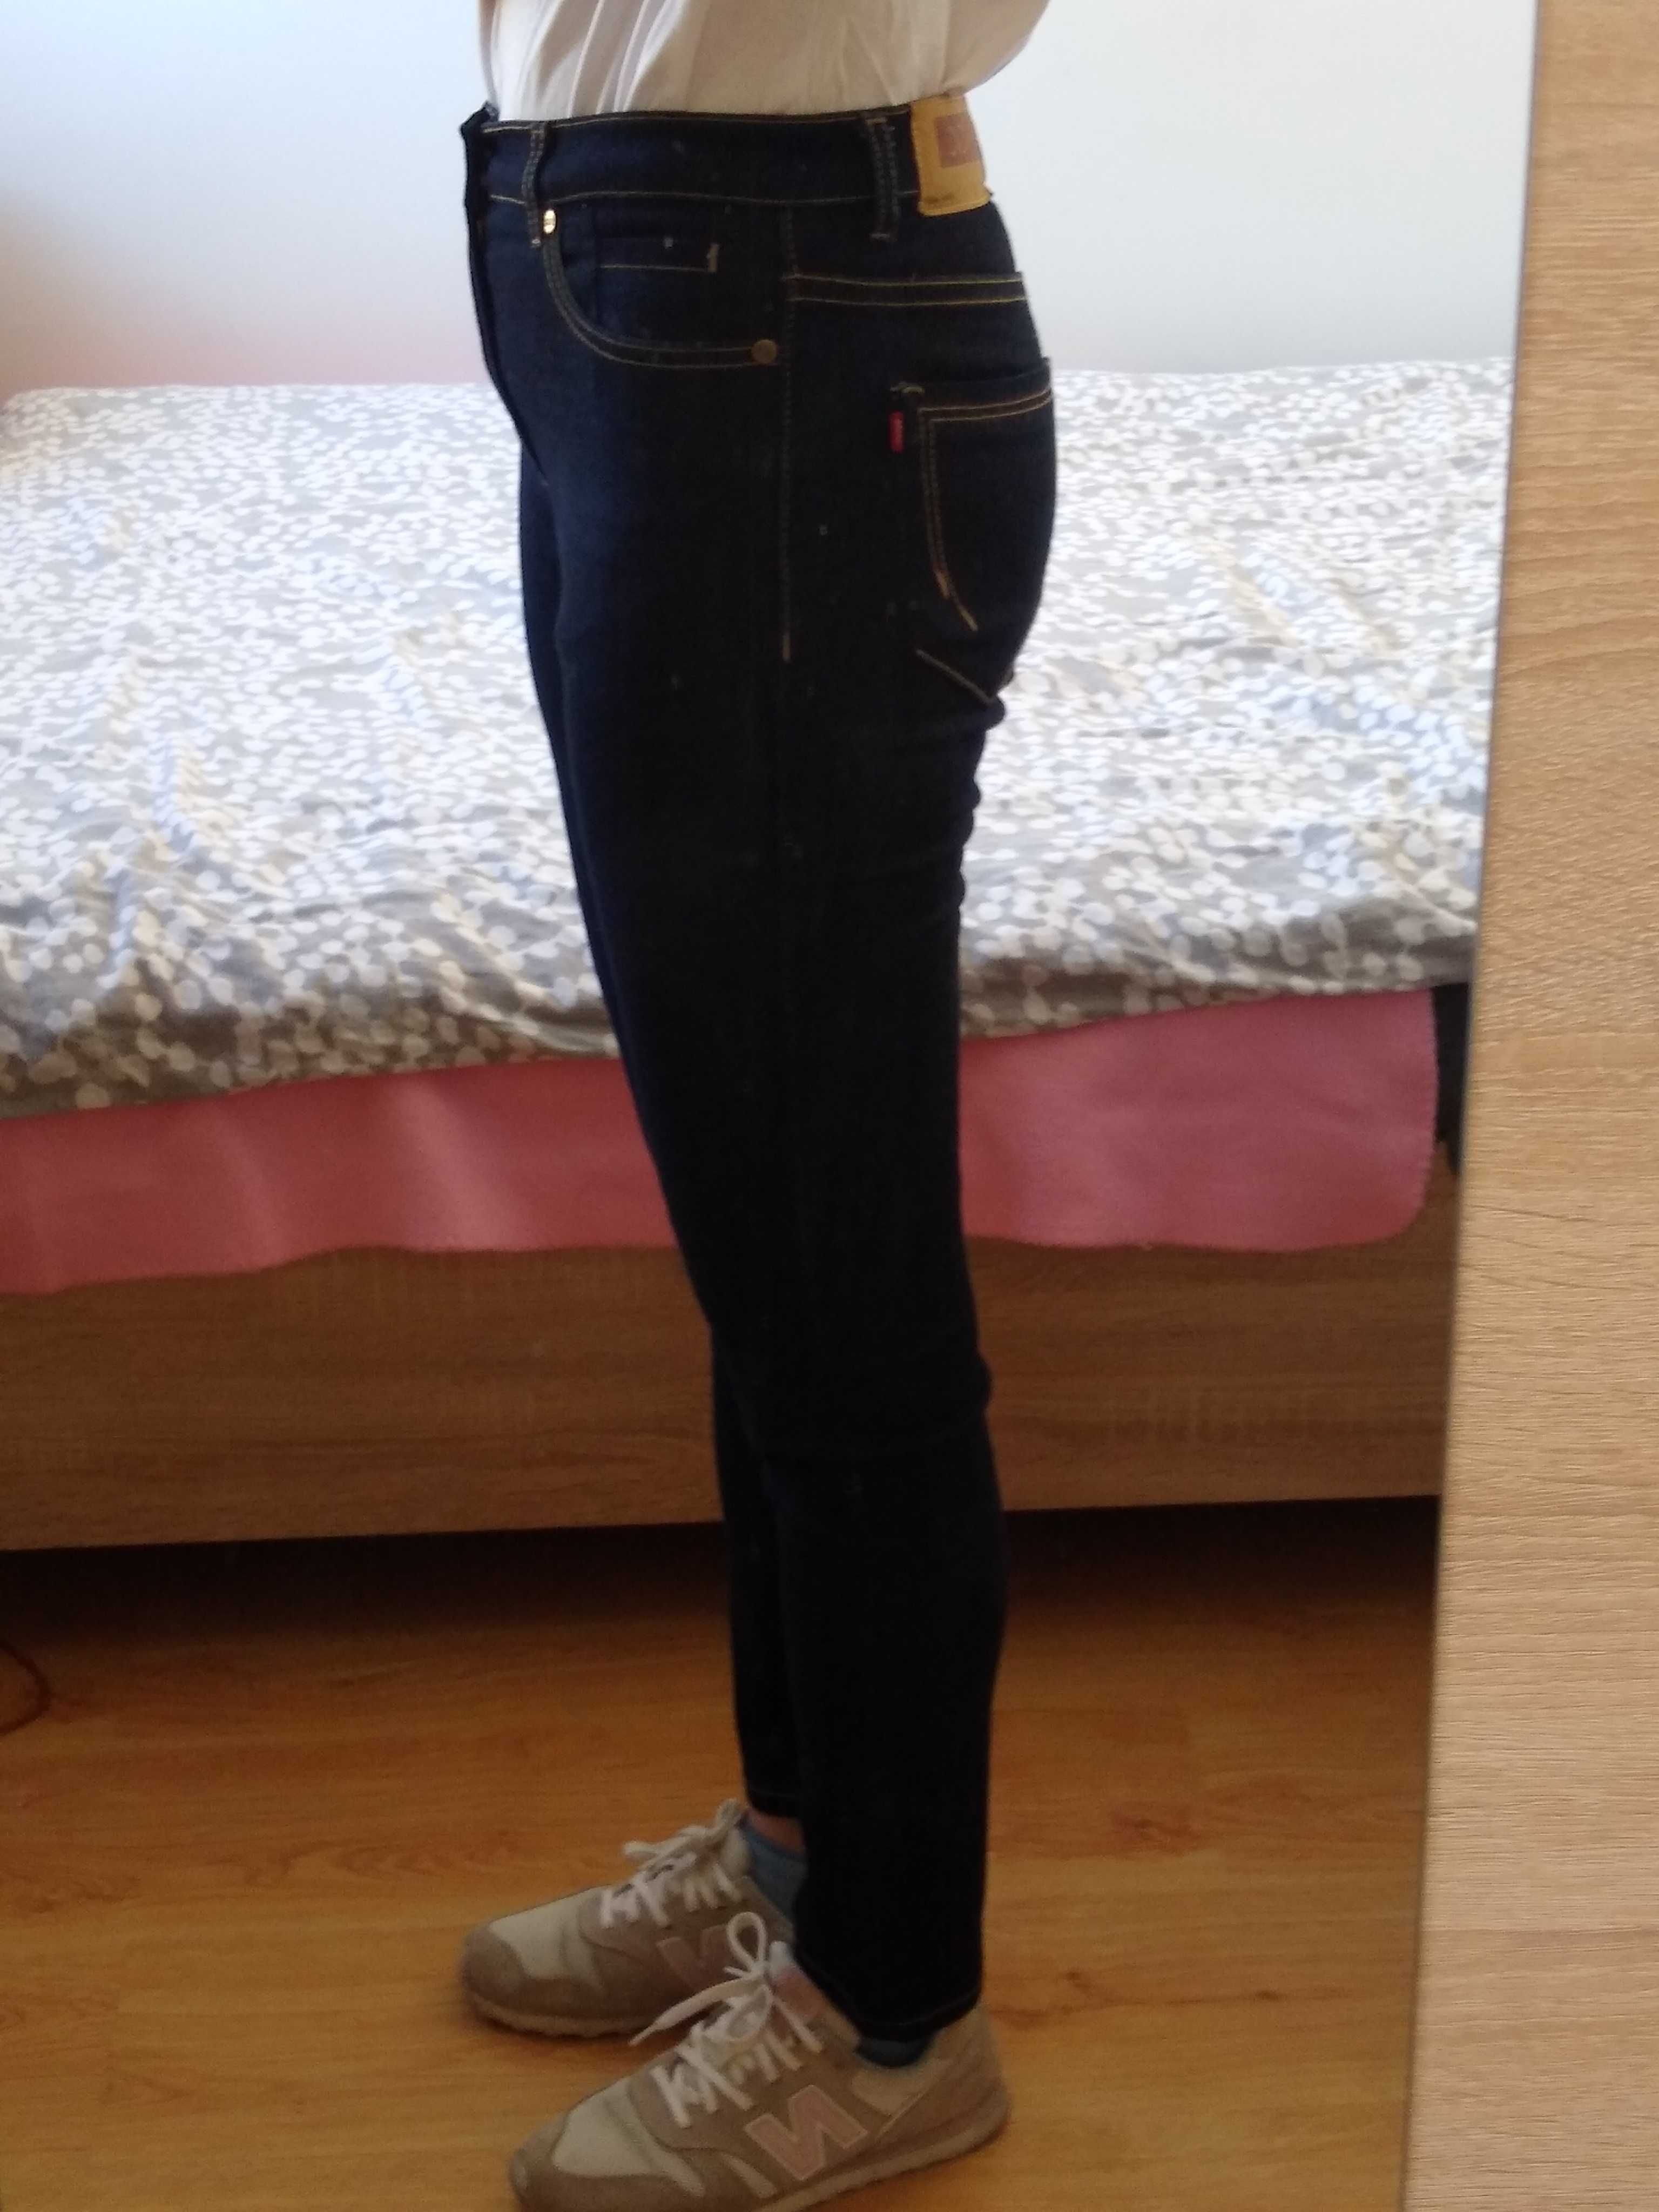 Spodnie jeansy damskie, rozmiar 38, M